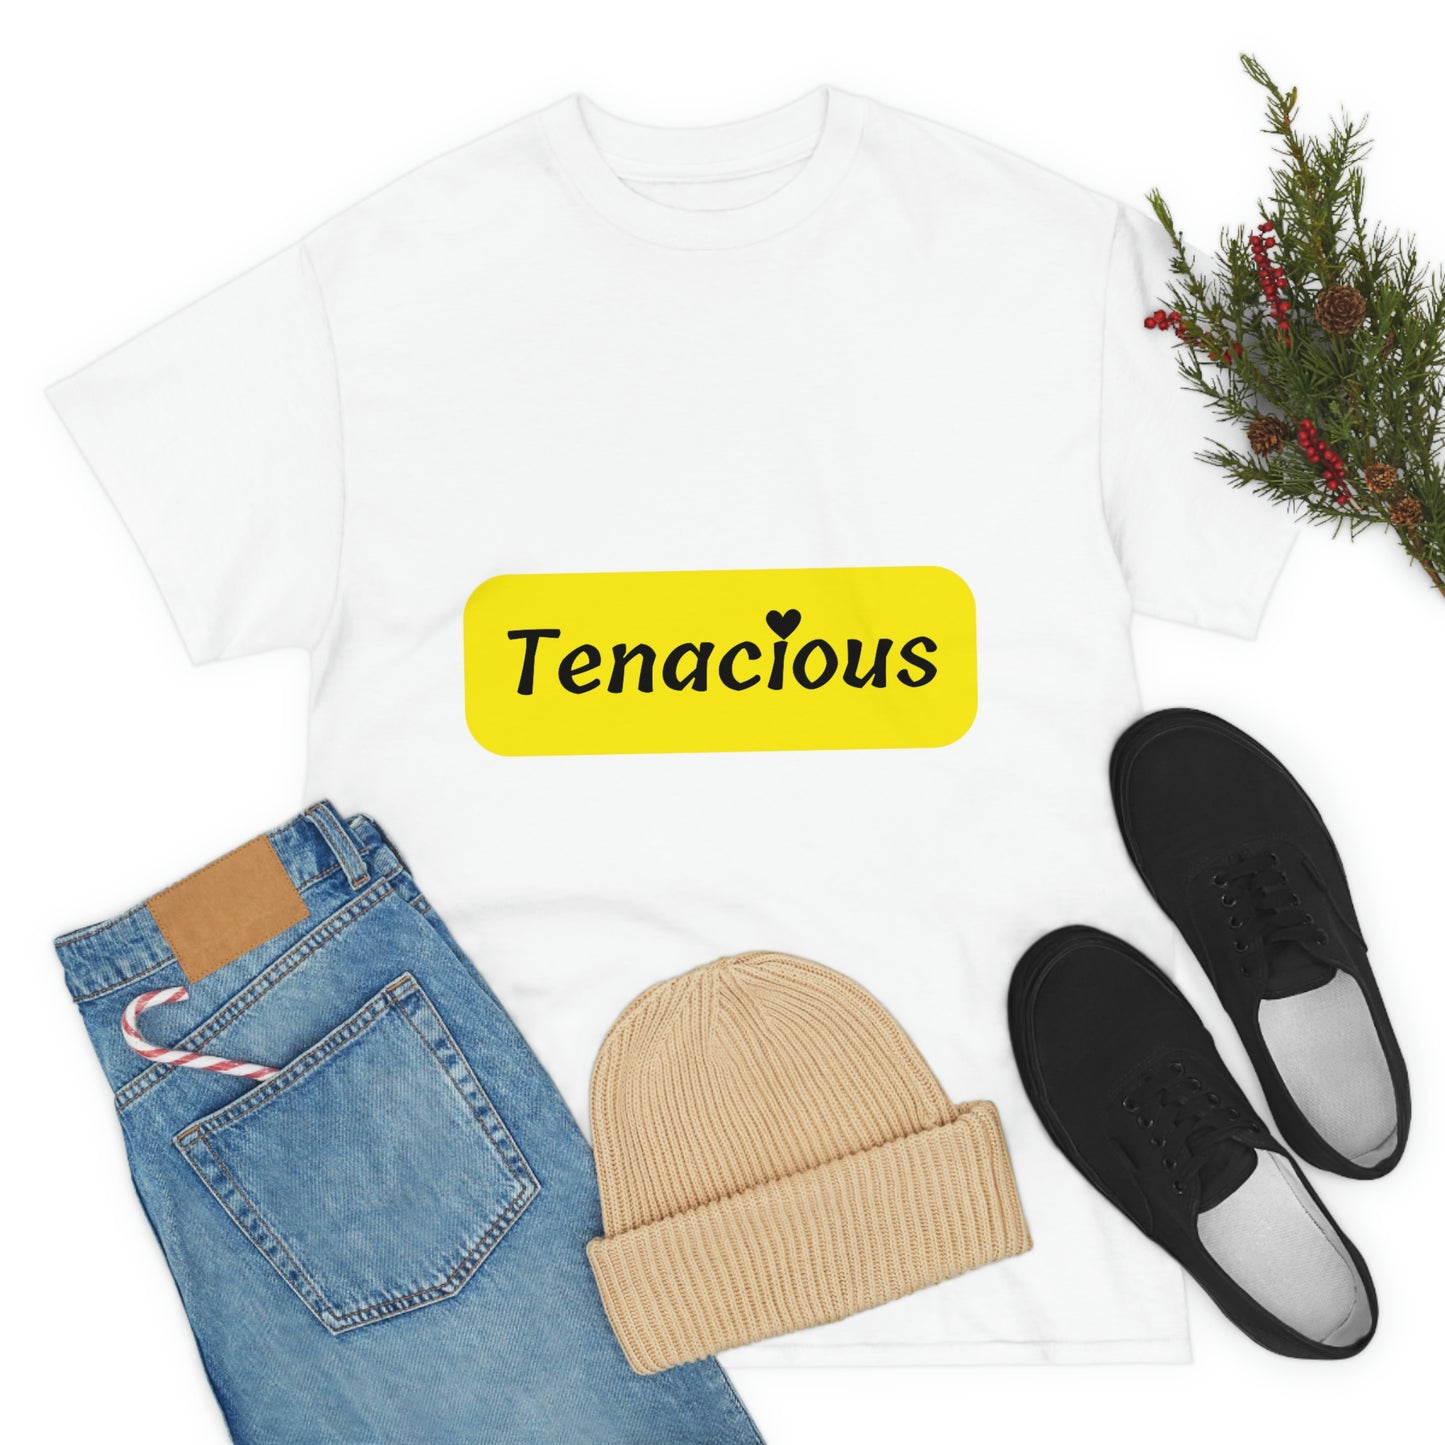 Tenacious T-shirt